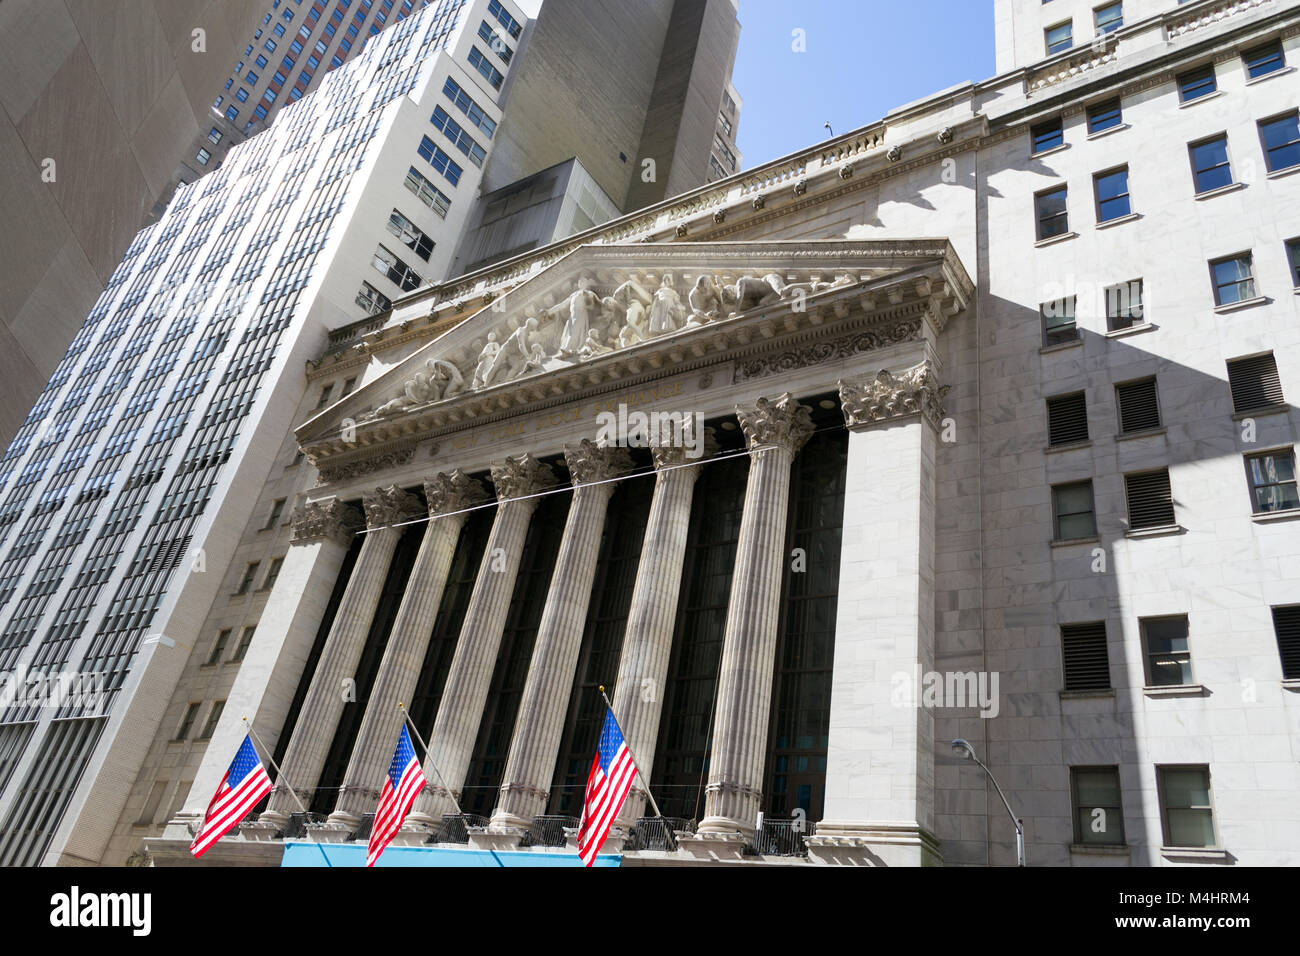 New York Stock Exchange building Stock Photo